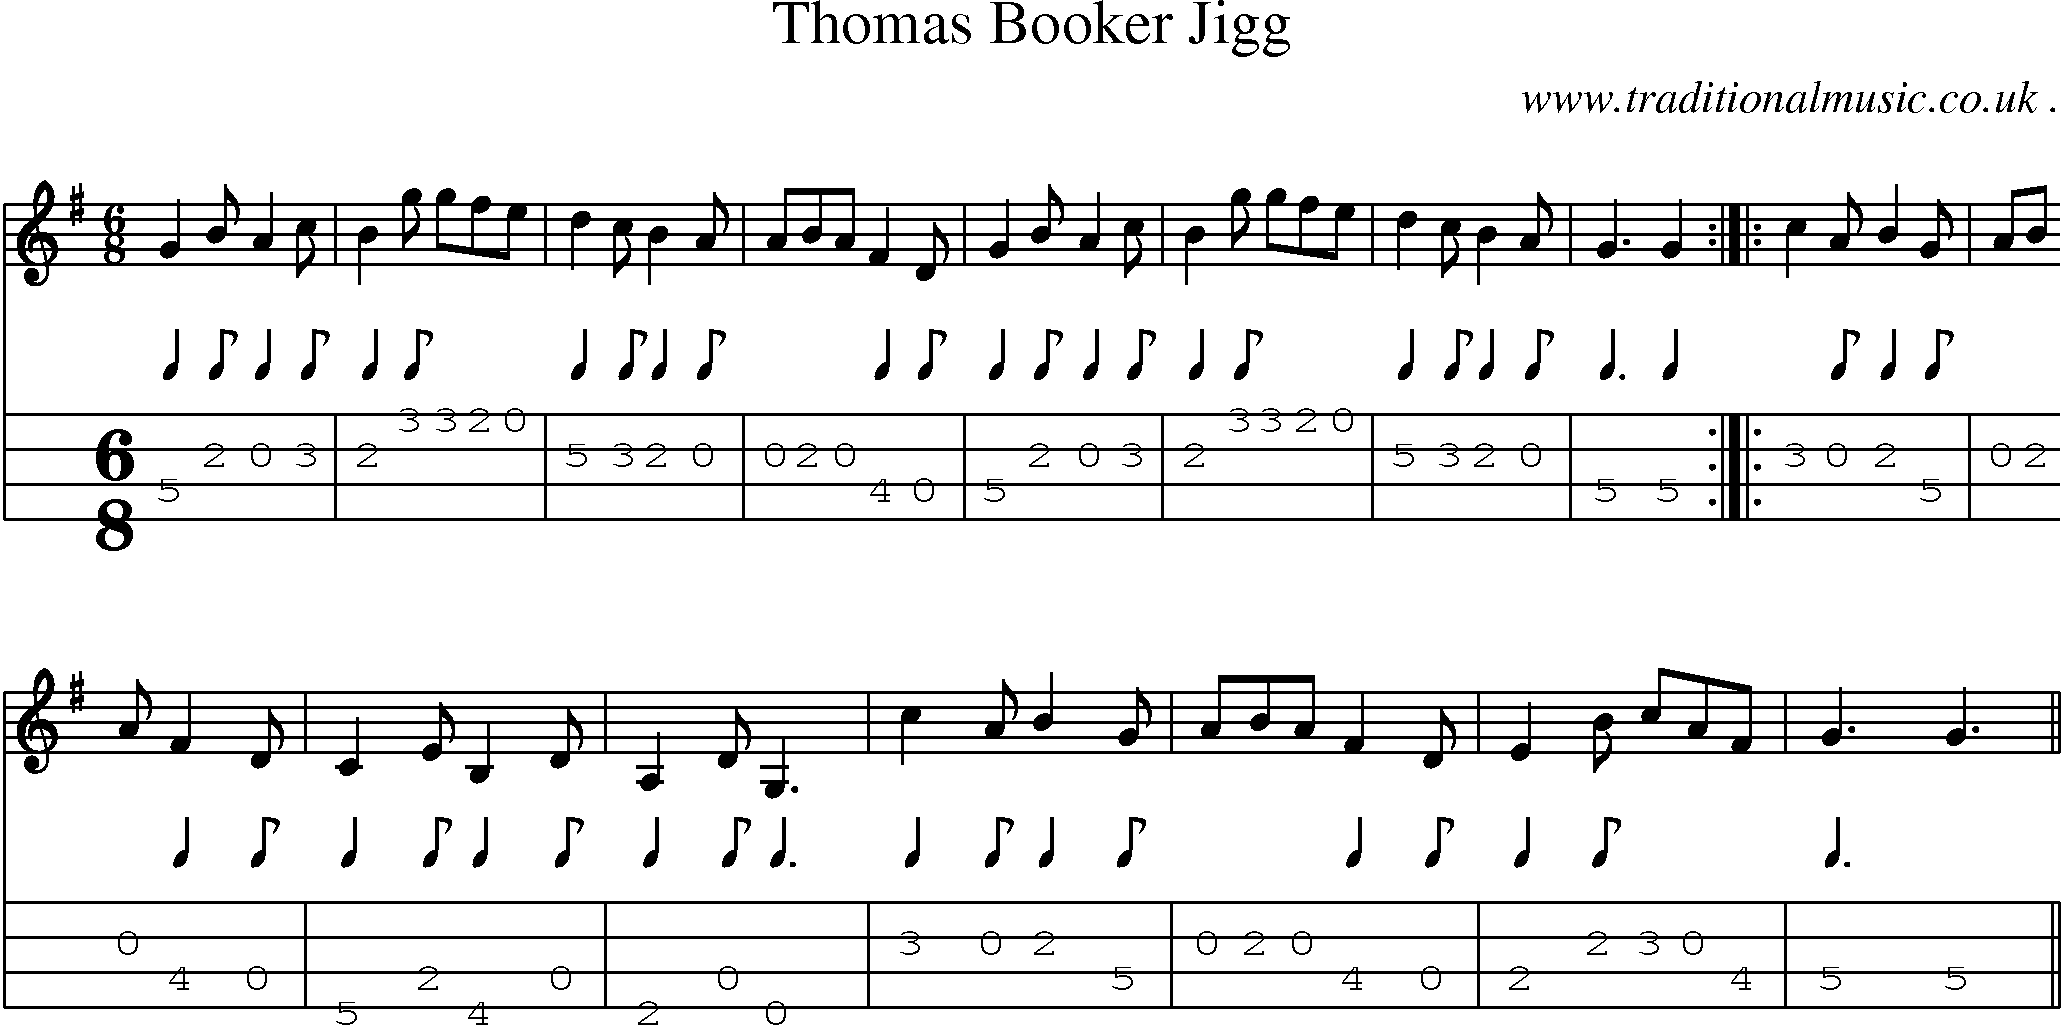 Sheet-Music and Mandolin Tabs for Thomas Booker Jigg